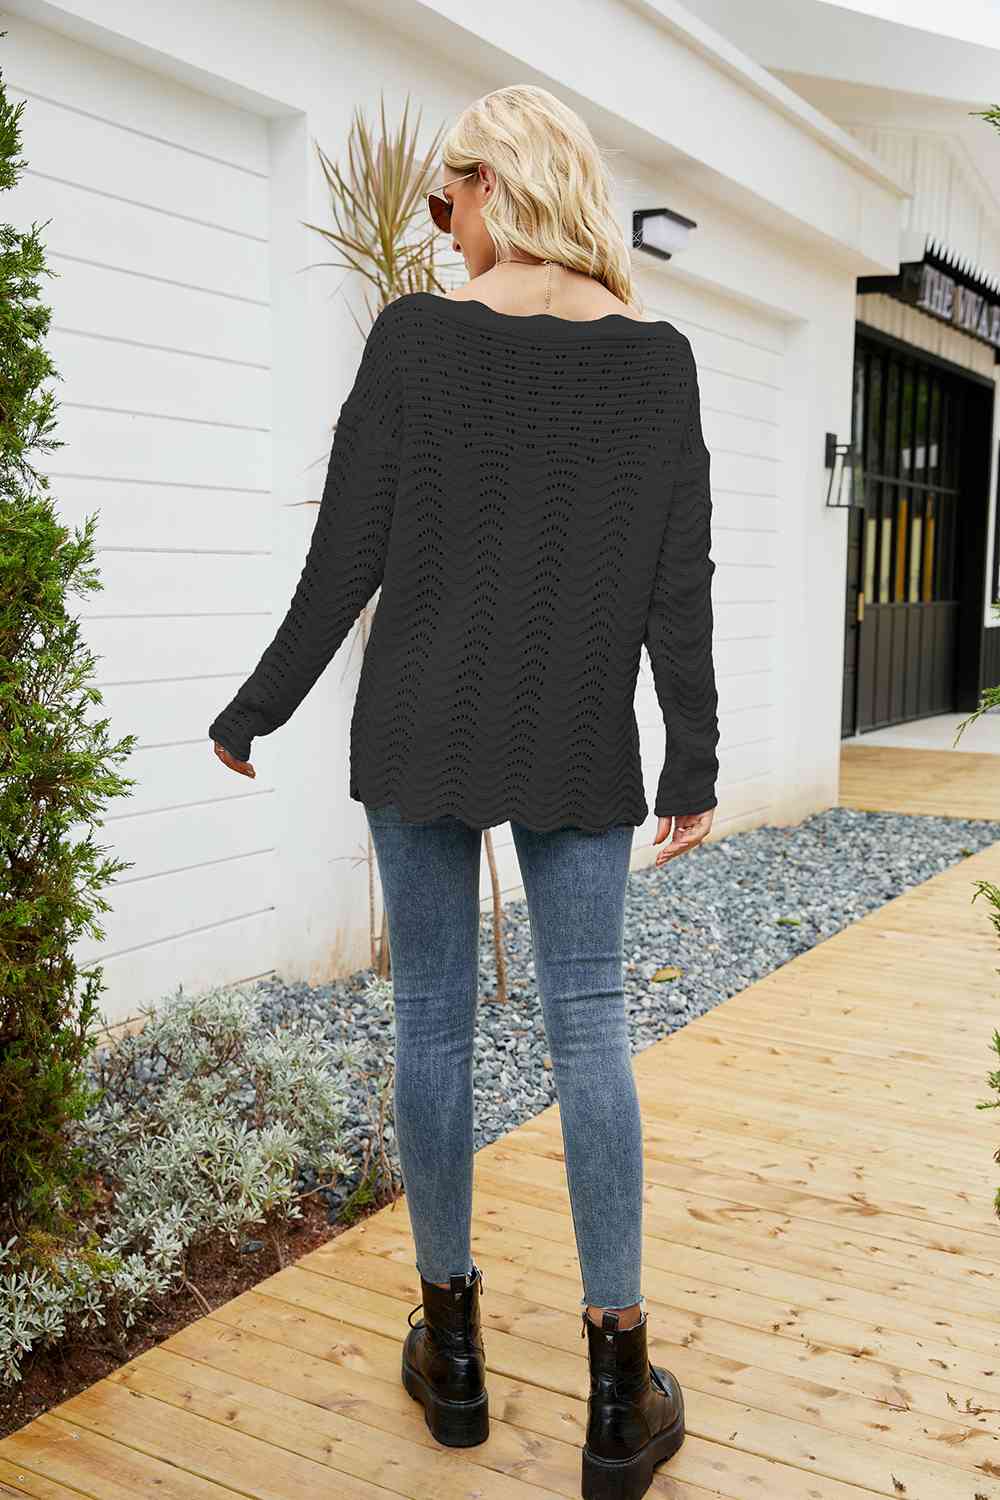 Round Neck Drop Shoulder Sweater